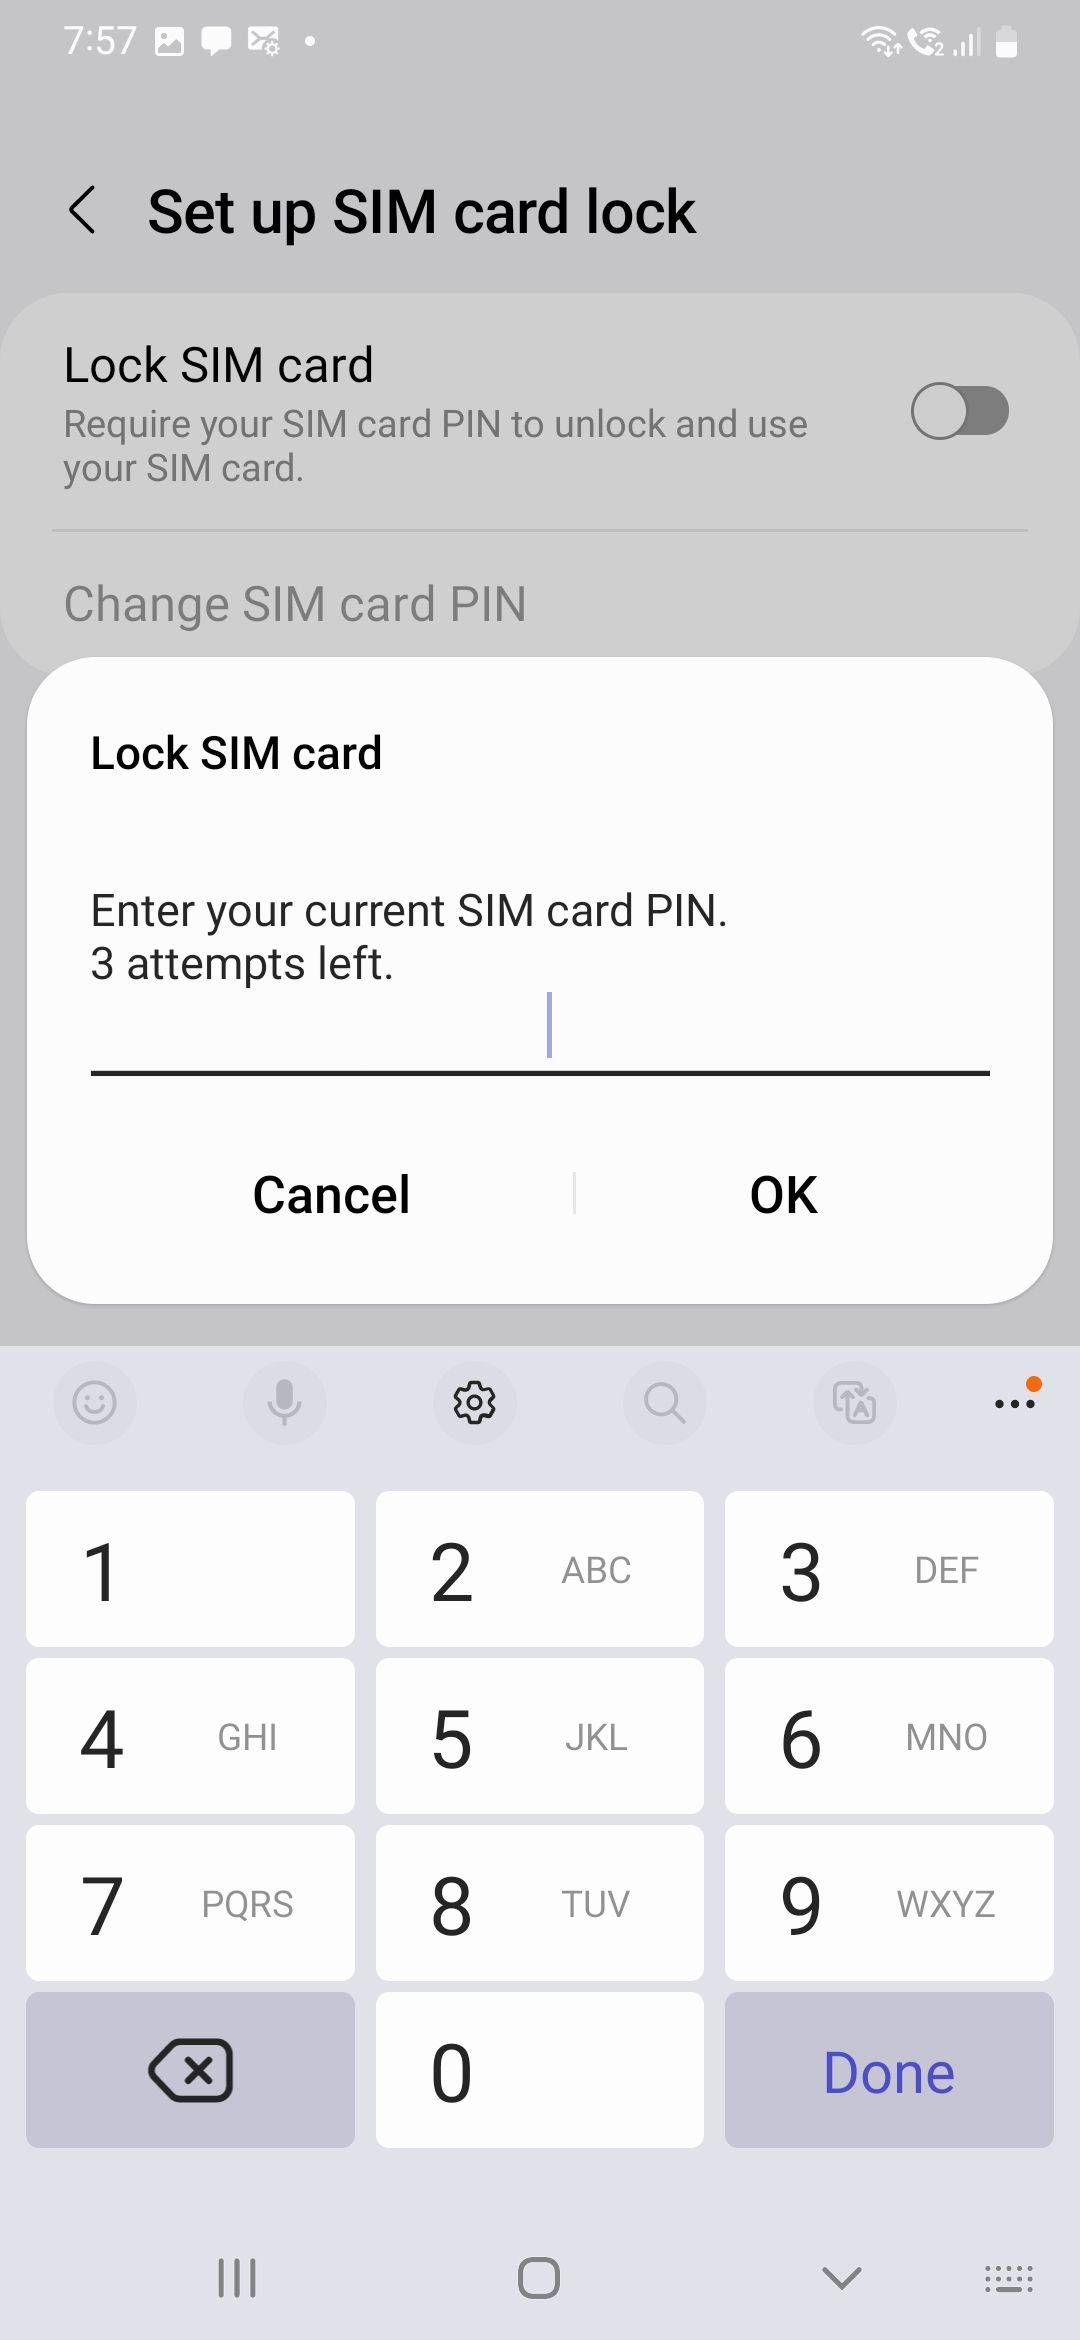 insira o PIN atual do cartão SIM